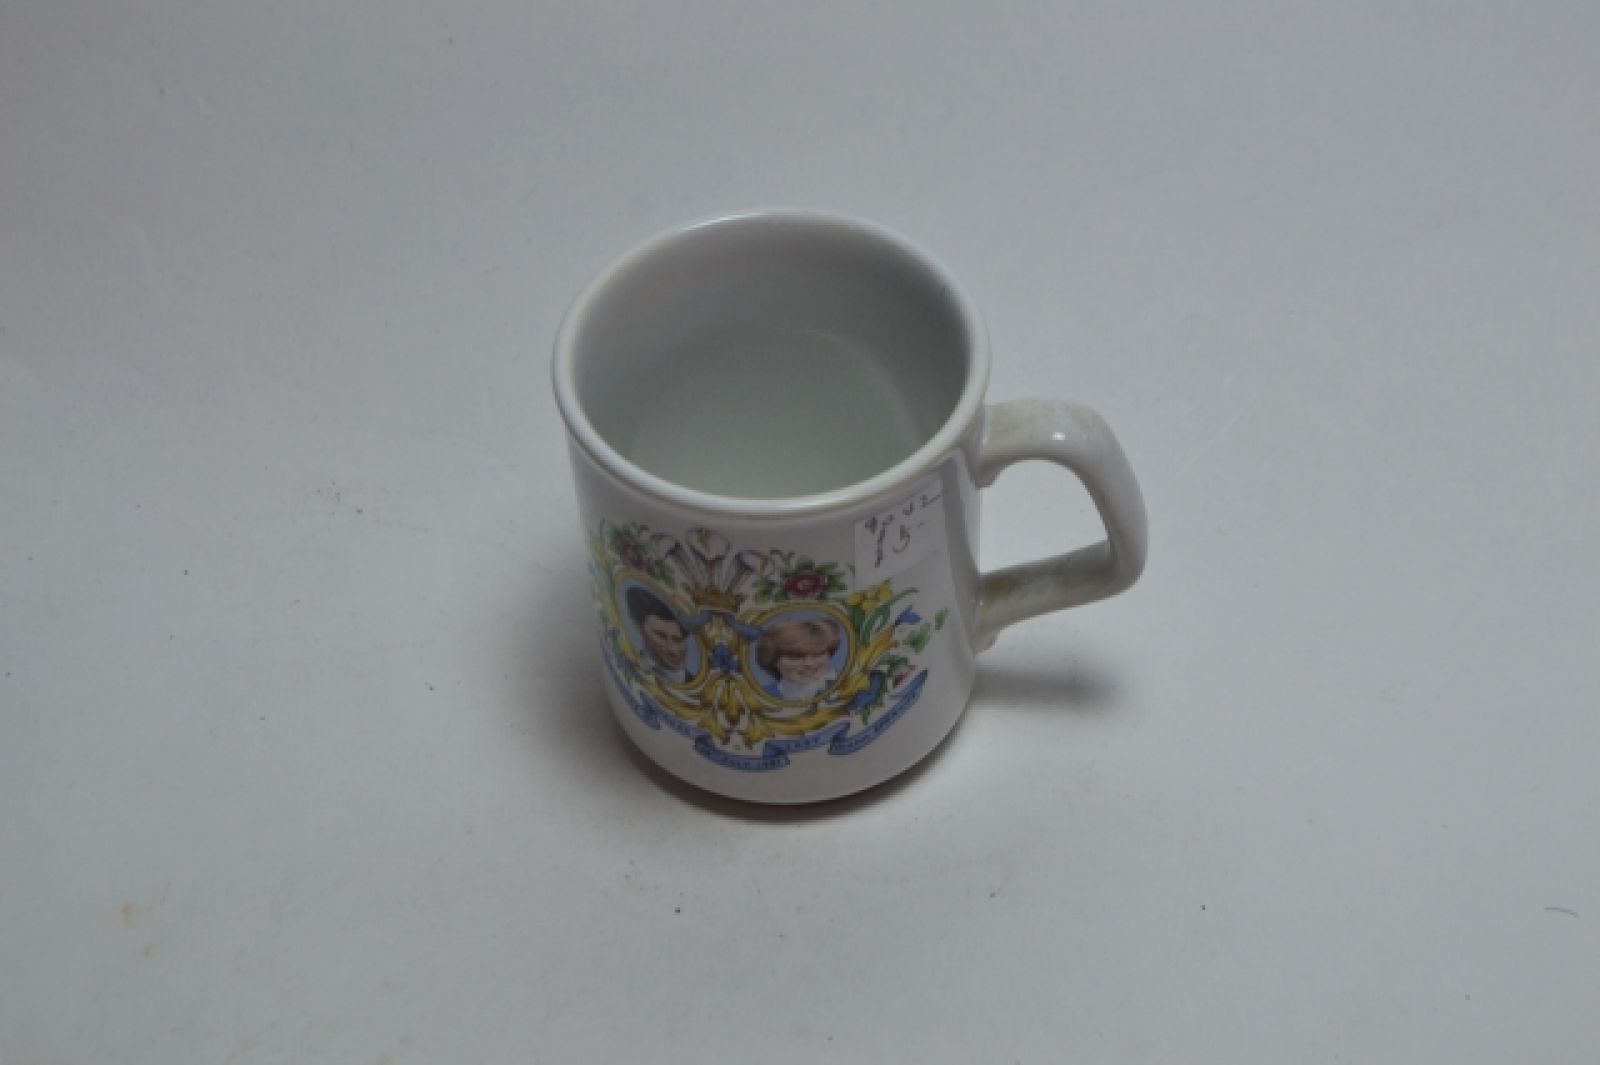 Small commemorative mug ;Charles and Diana.